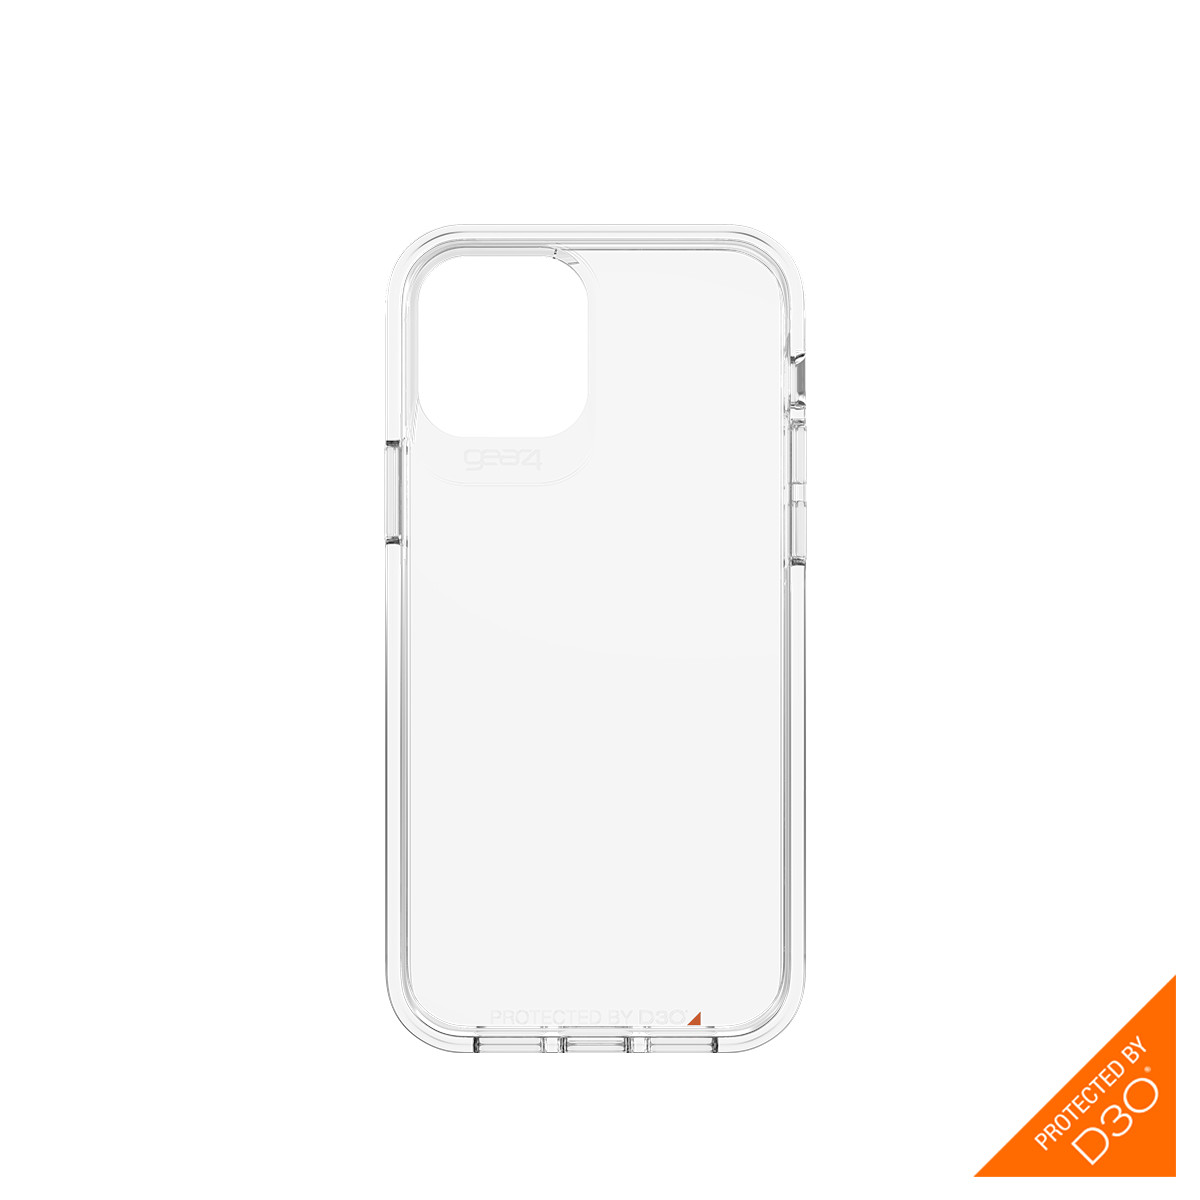 Ốp lưng chống sốc Gear4 D3O Crystal Palace iPhone - Công nghệ chống sốc độc quyền D3O, kháng khuẩn, tương thích tốt với sóng 5G - Hàng chính hãng